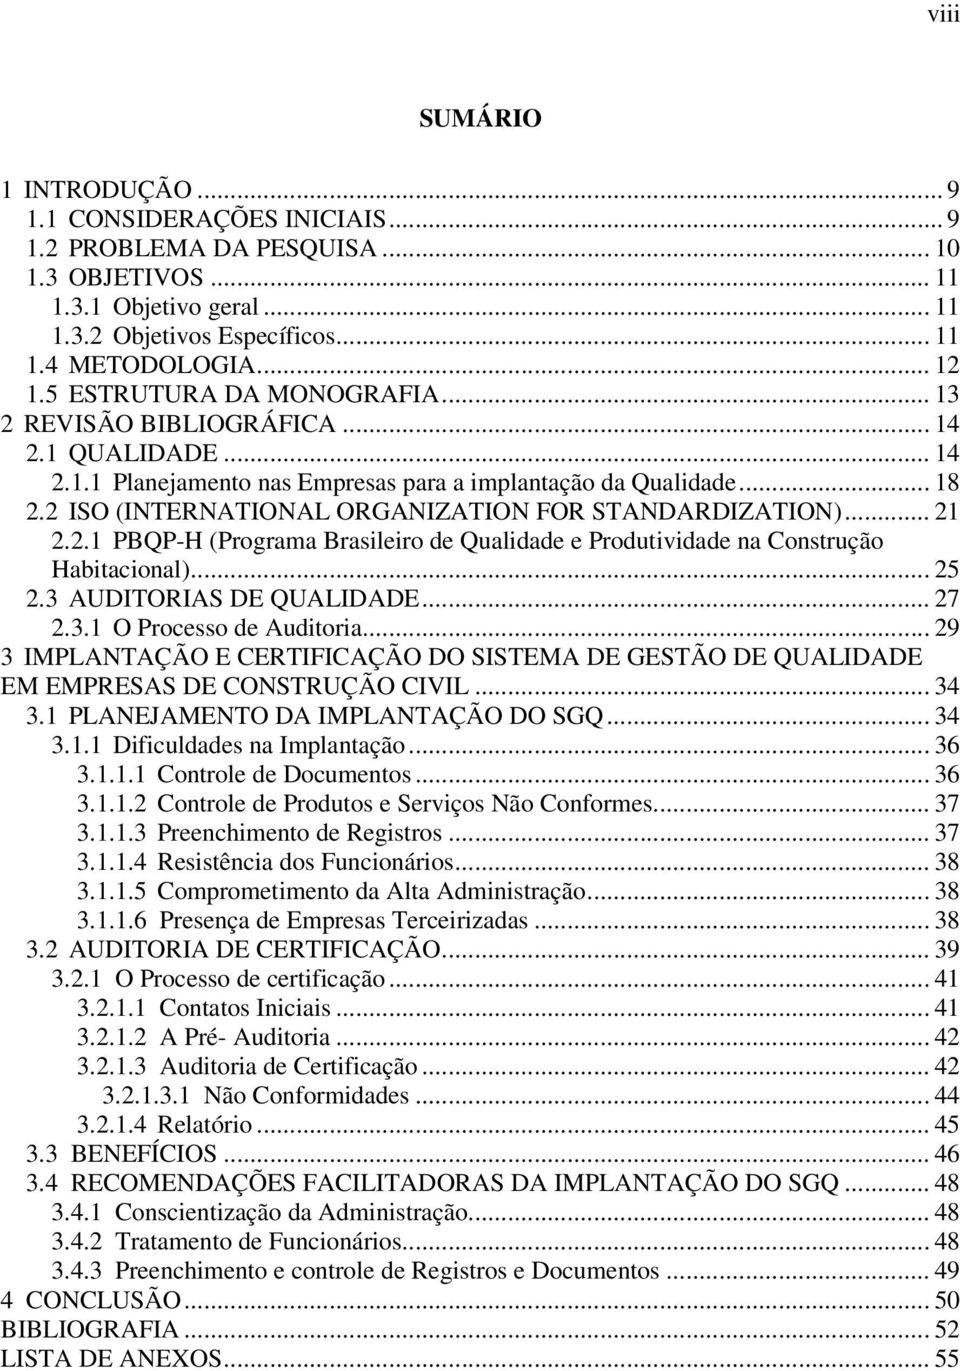 2 ISO (INTERNATIONAL ORGANIZATION FOR STANDARDIZATION)... 21 2.2.1 PBQP-H (Programa Brasileiro de Qualidade e Produtividade na Construção Habitacional)... 25 2.3 AUDITORIAS DE QUALIDADE... 27 2.3.1 O Processo de Auditoria.